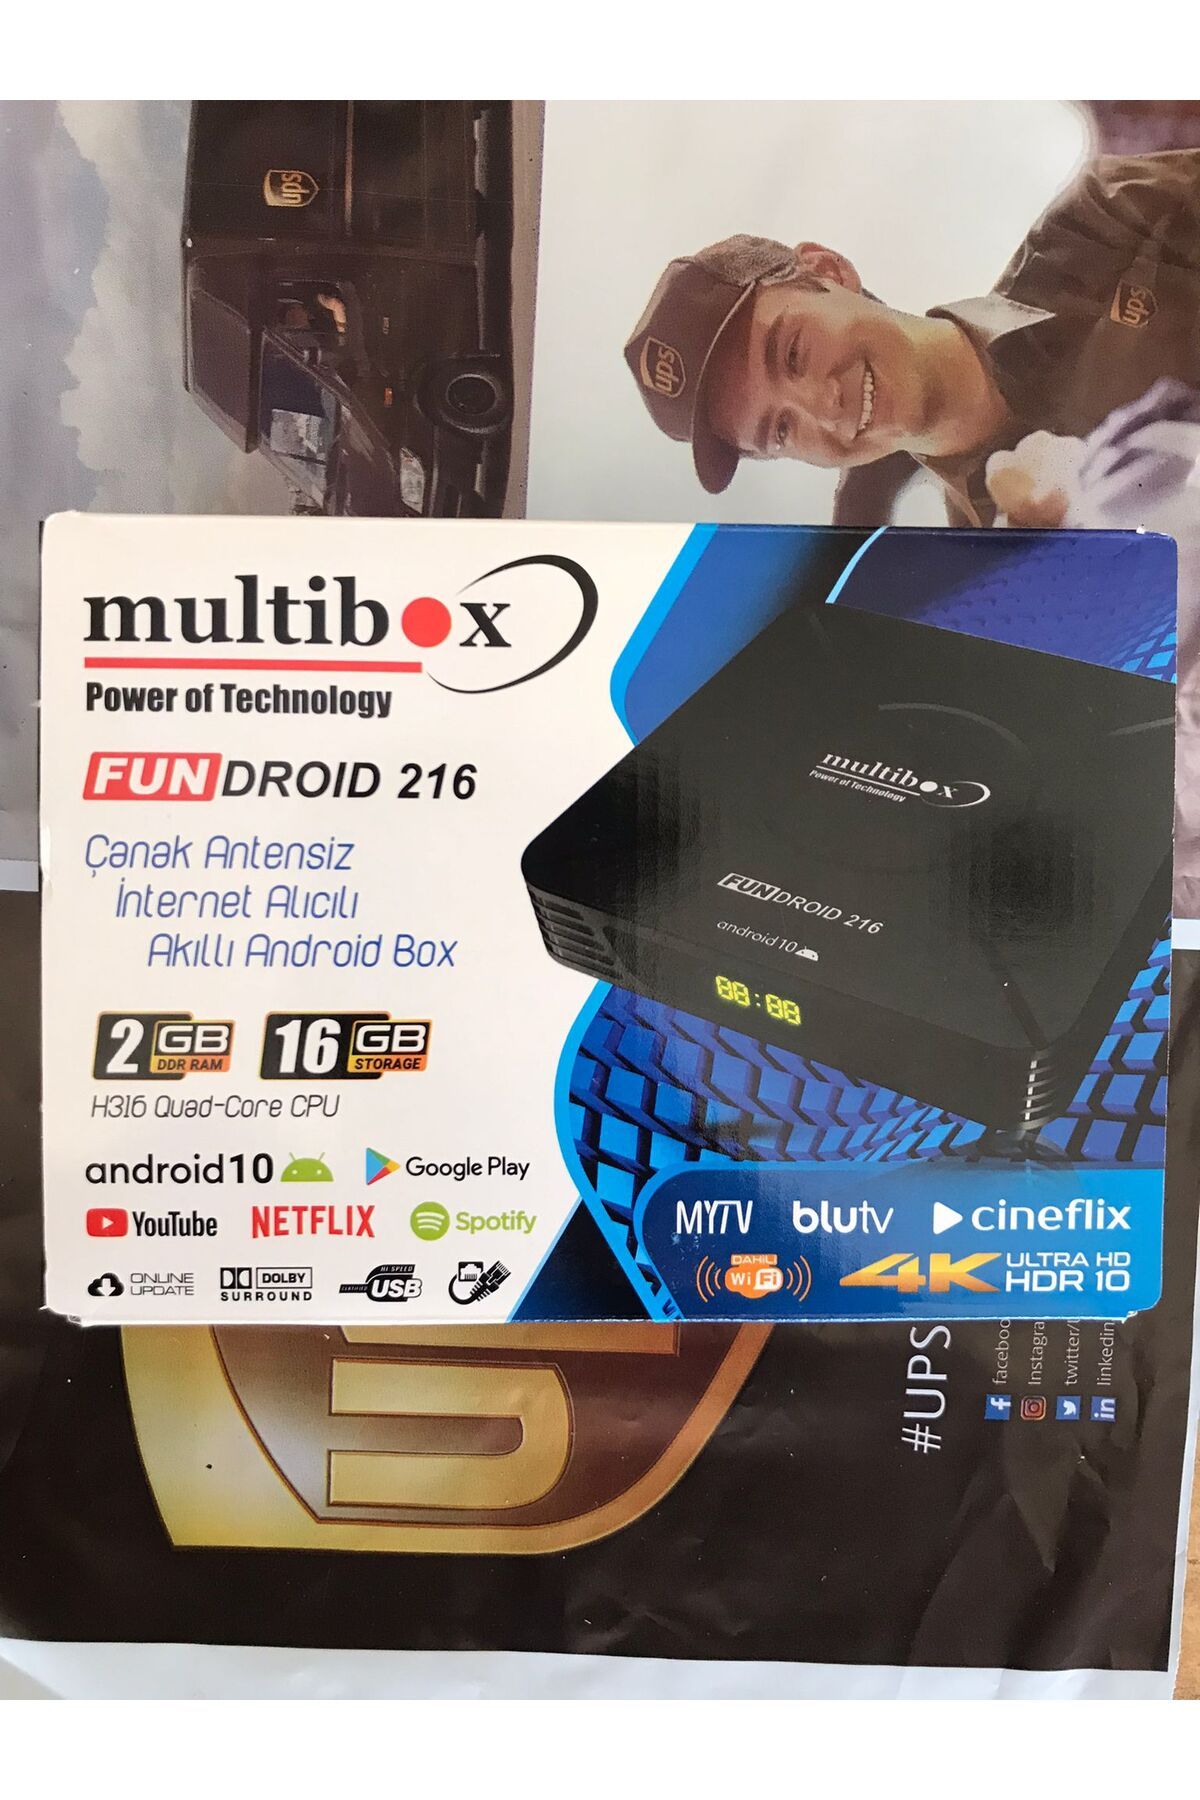 multibox Fundroid 216 Çanak Antensiz İnternet Alıcılı Akıllı Android Box